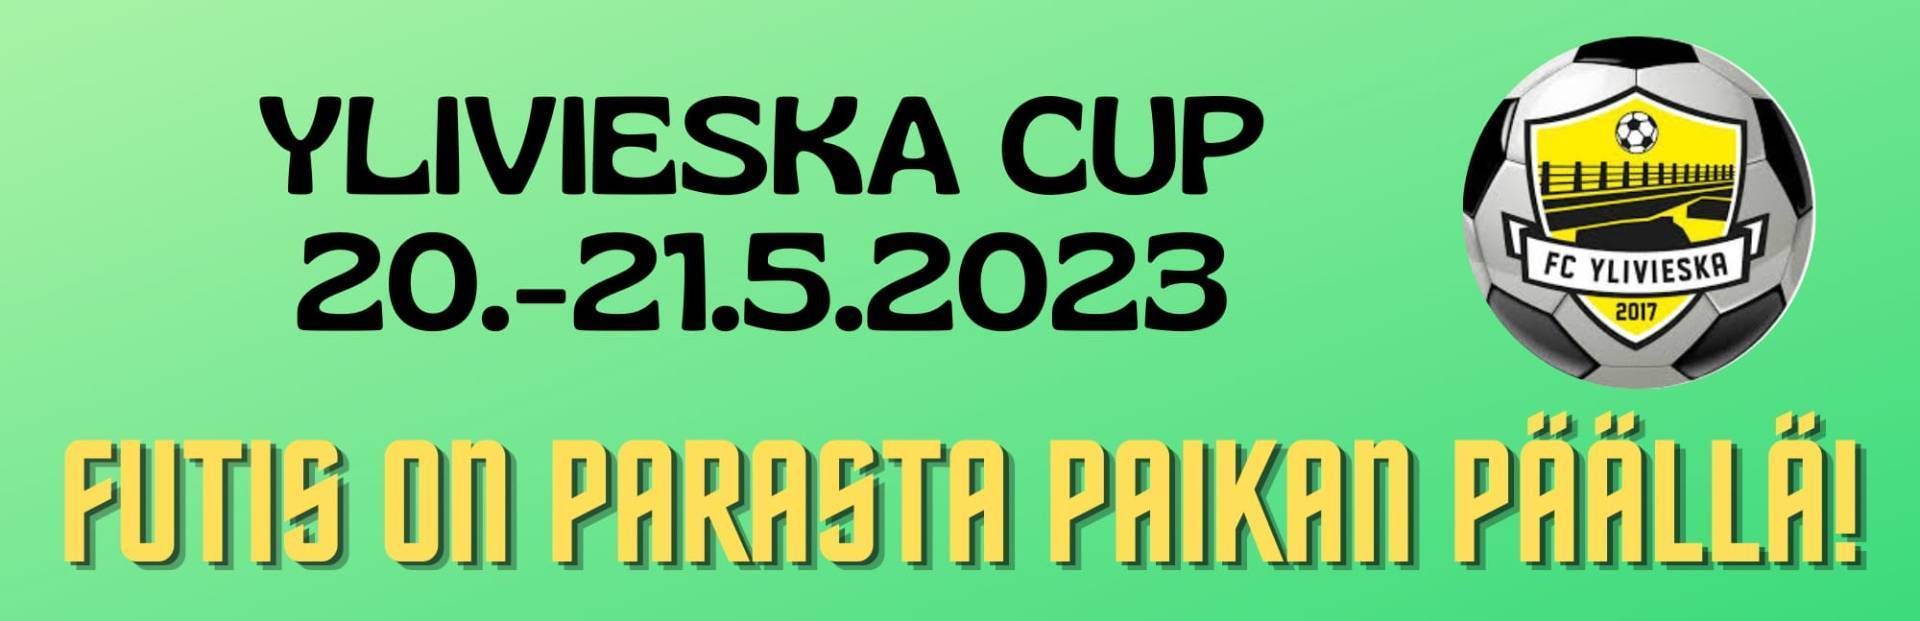 Tervetuloa Ylivieska CUP:iin tulevana viikonloppuna (20.-21.5.2023)!